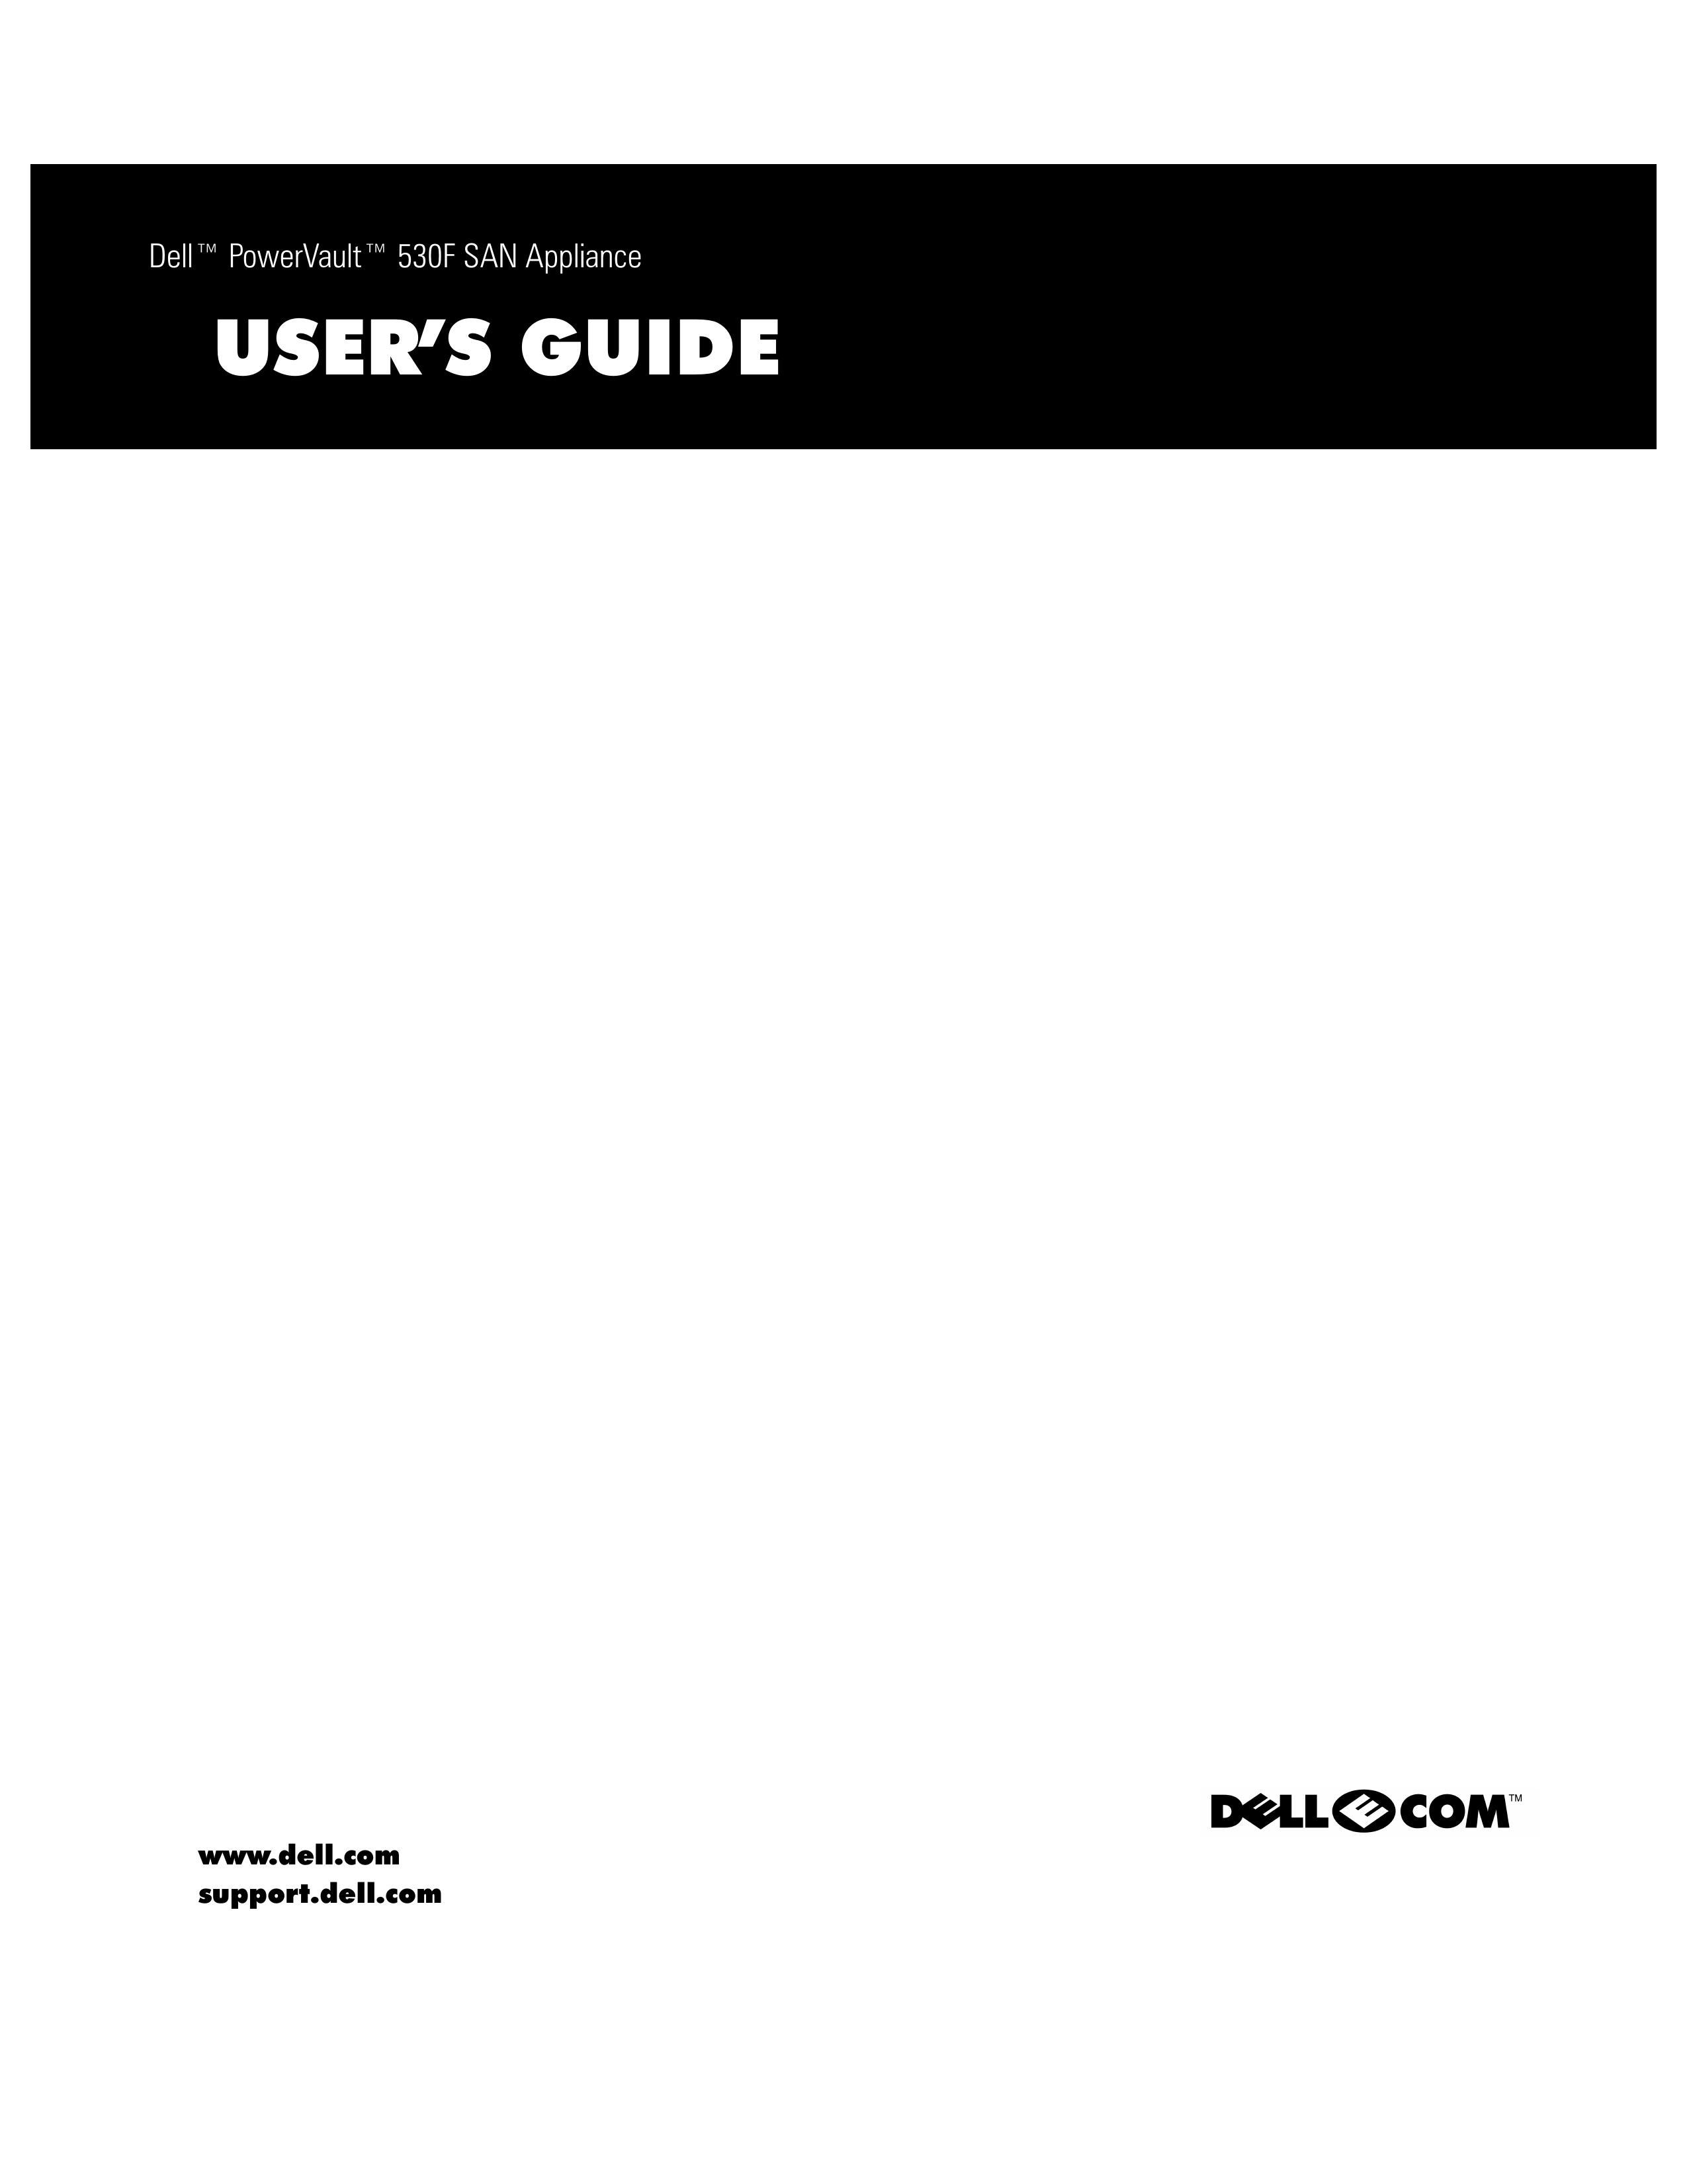 Dell 530F Marine Sanitation System User Manual